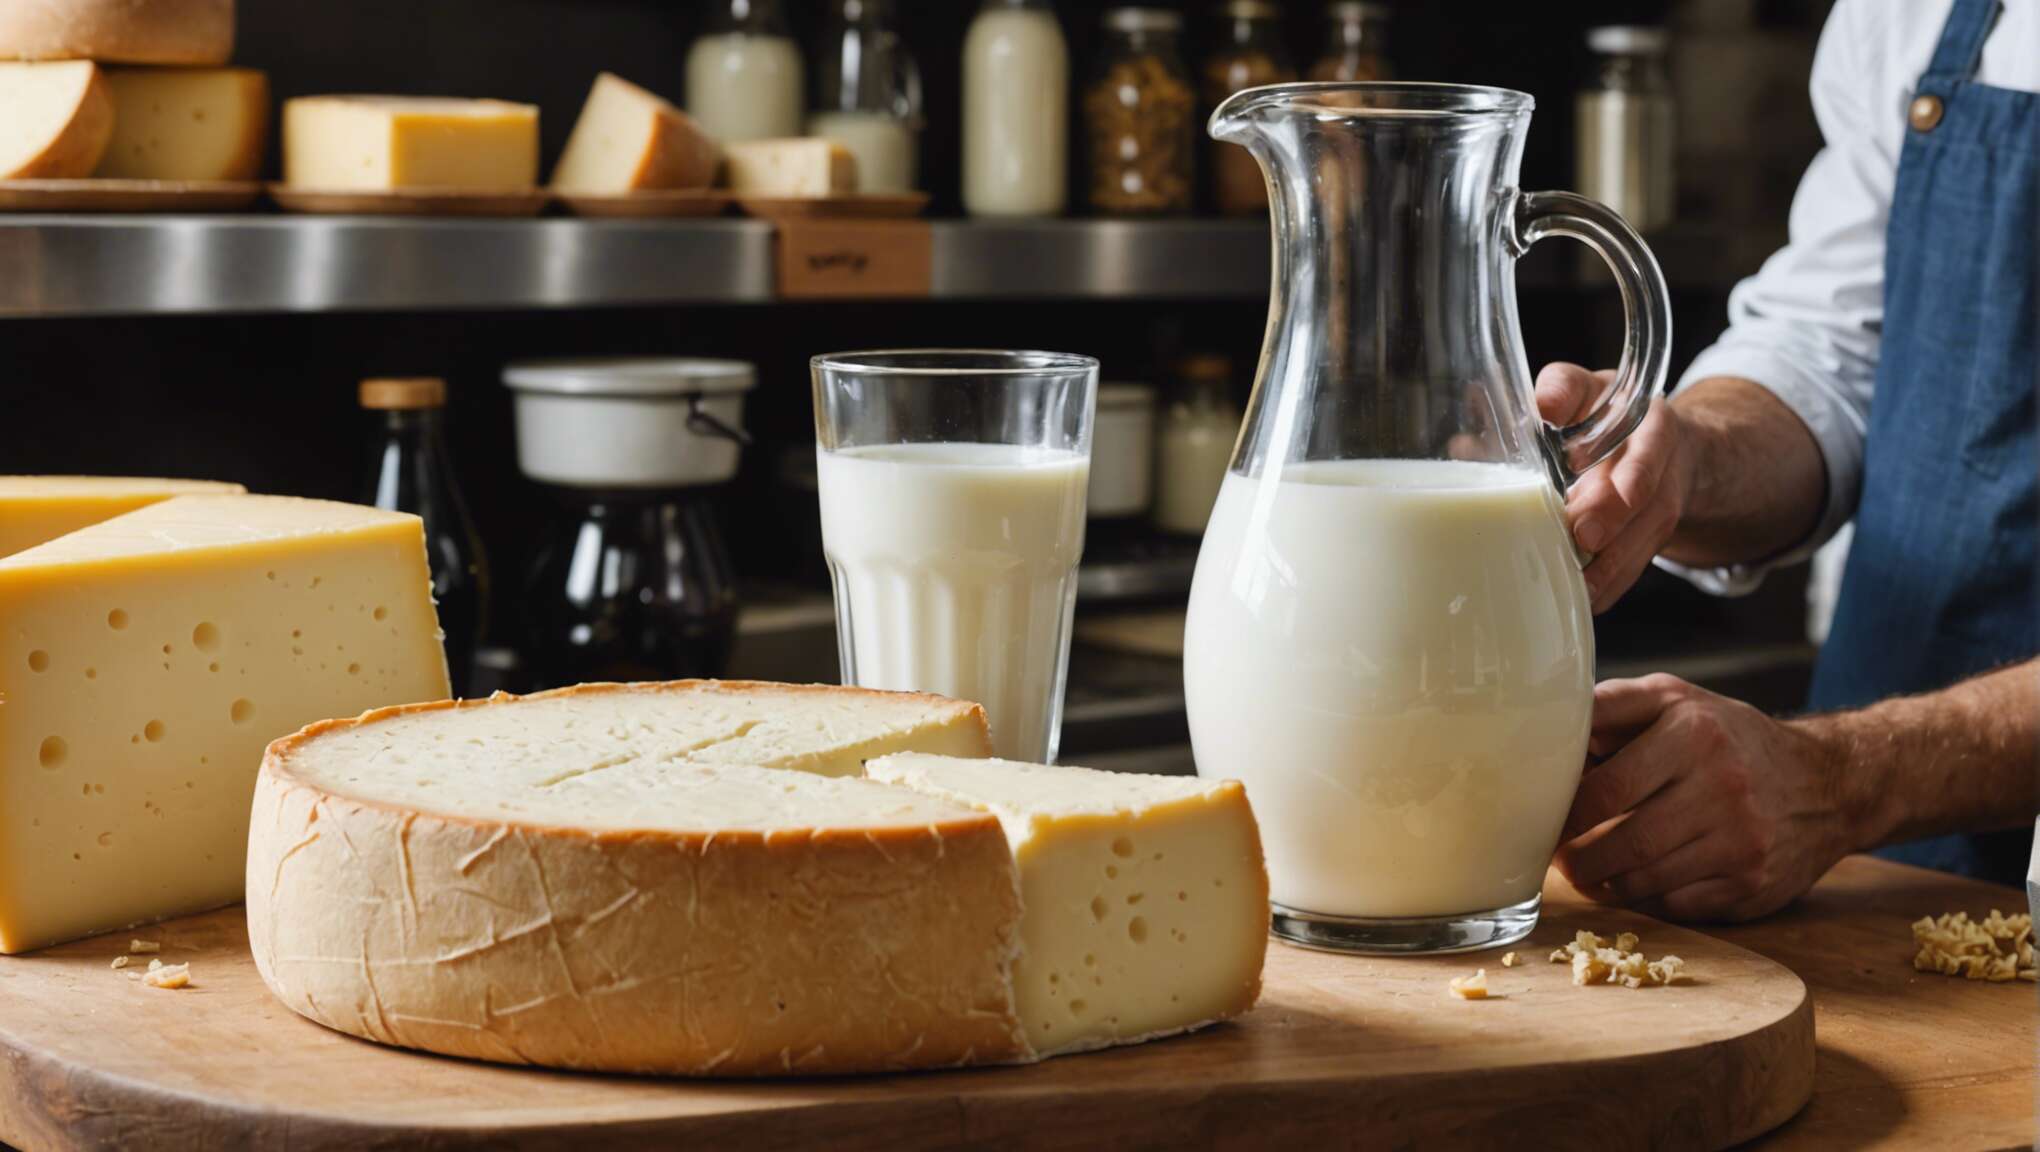 Choisir le bon lait pour son fromage artisanal